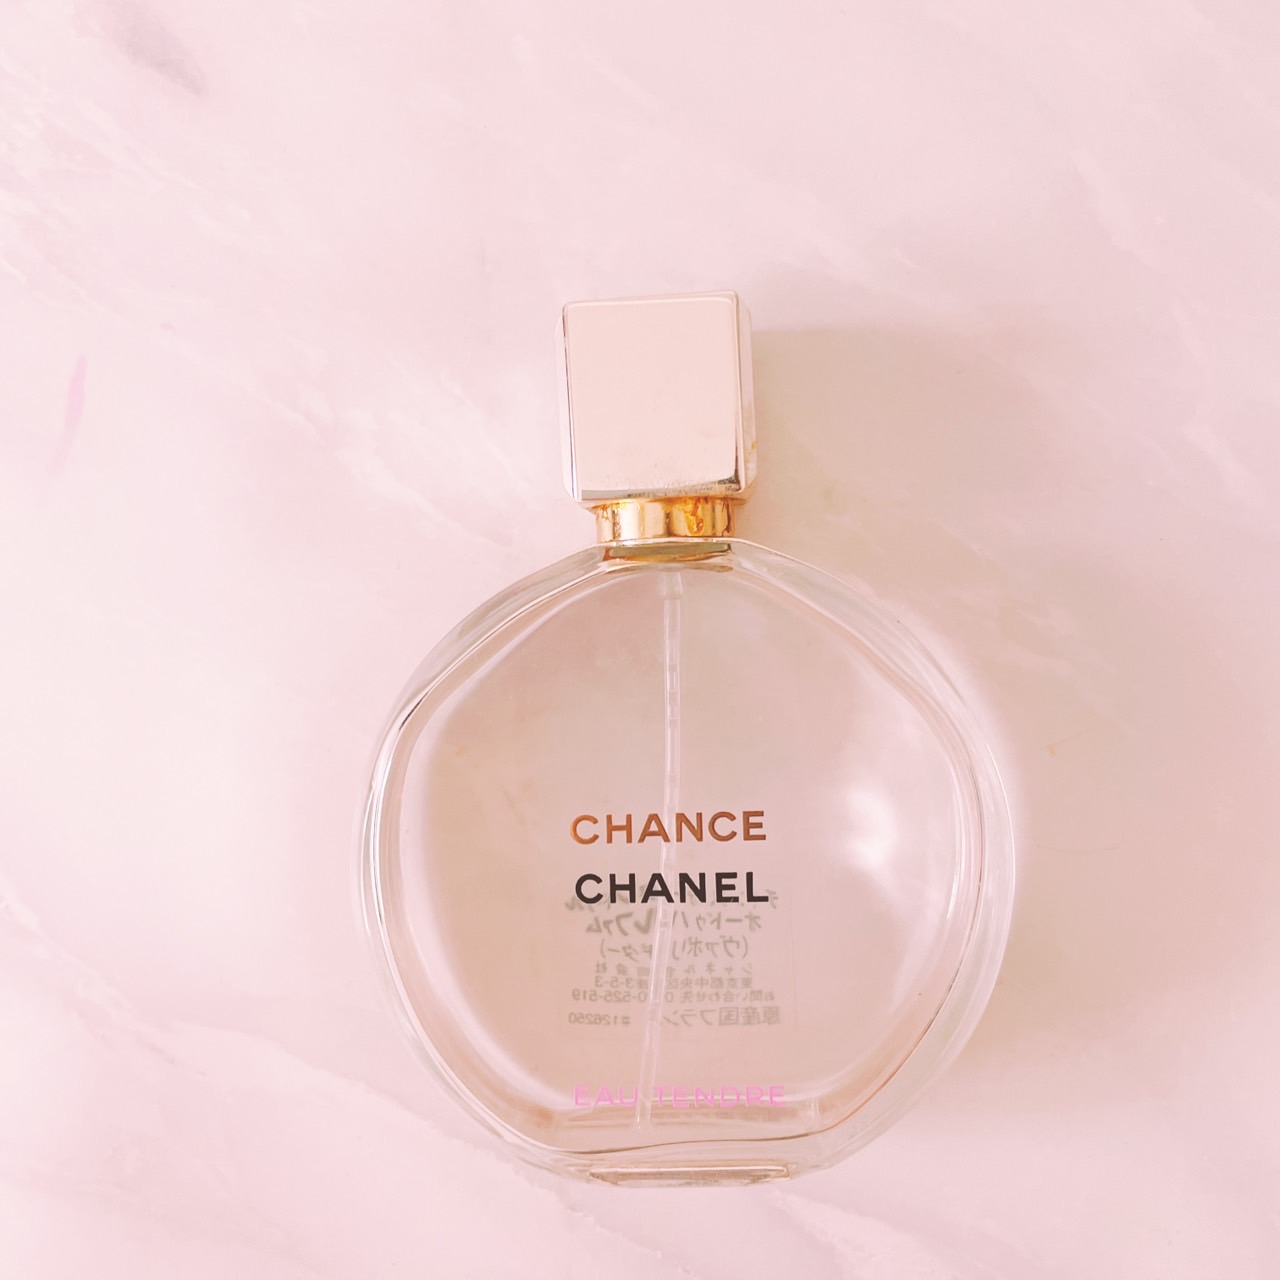 イベントでも大人気のシャネルの香水「チャンス」